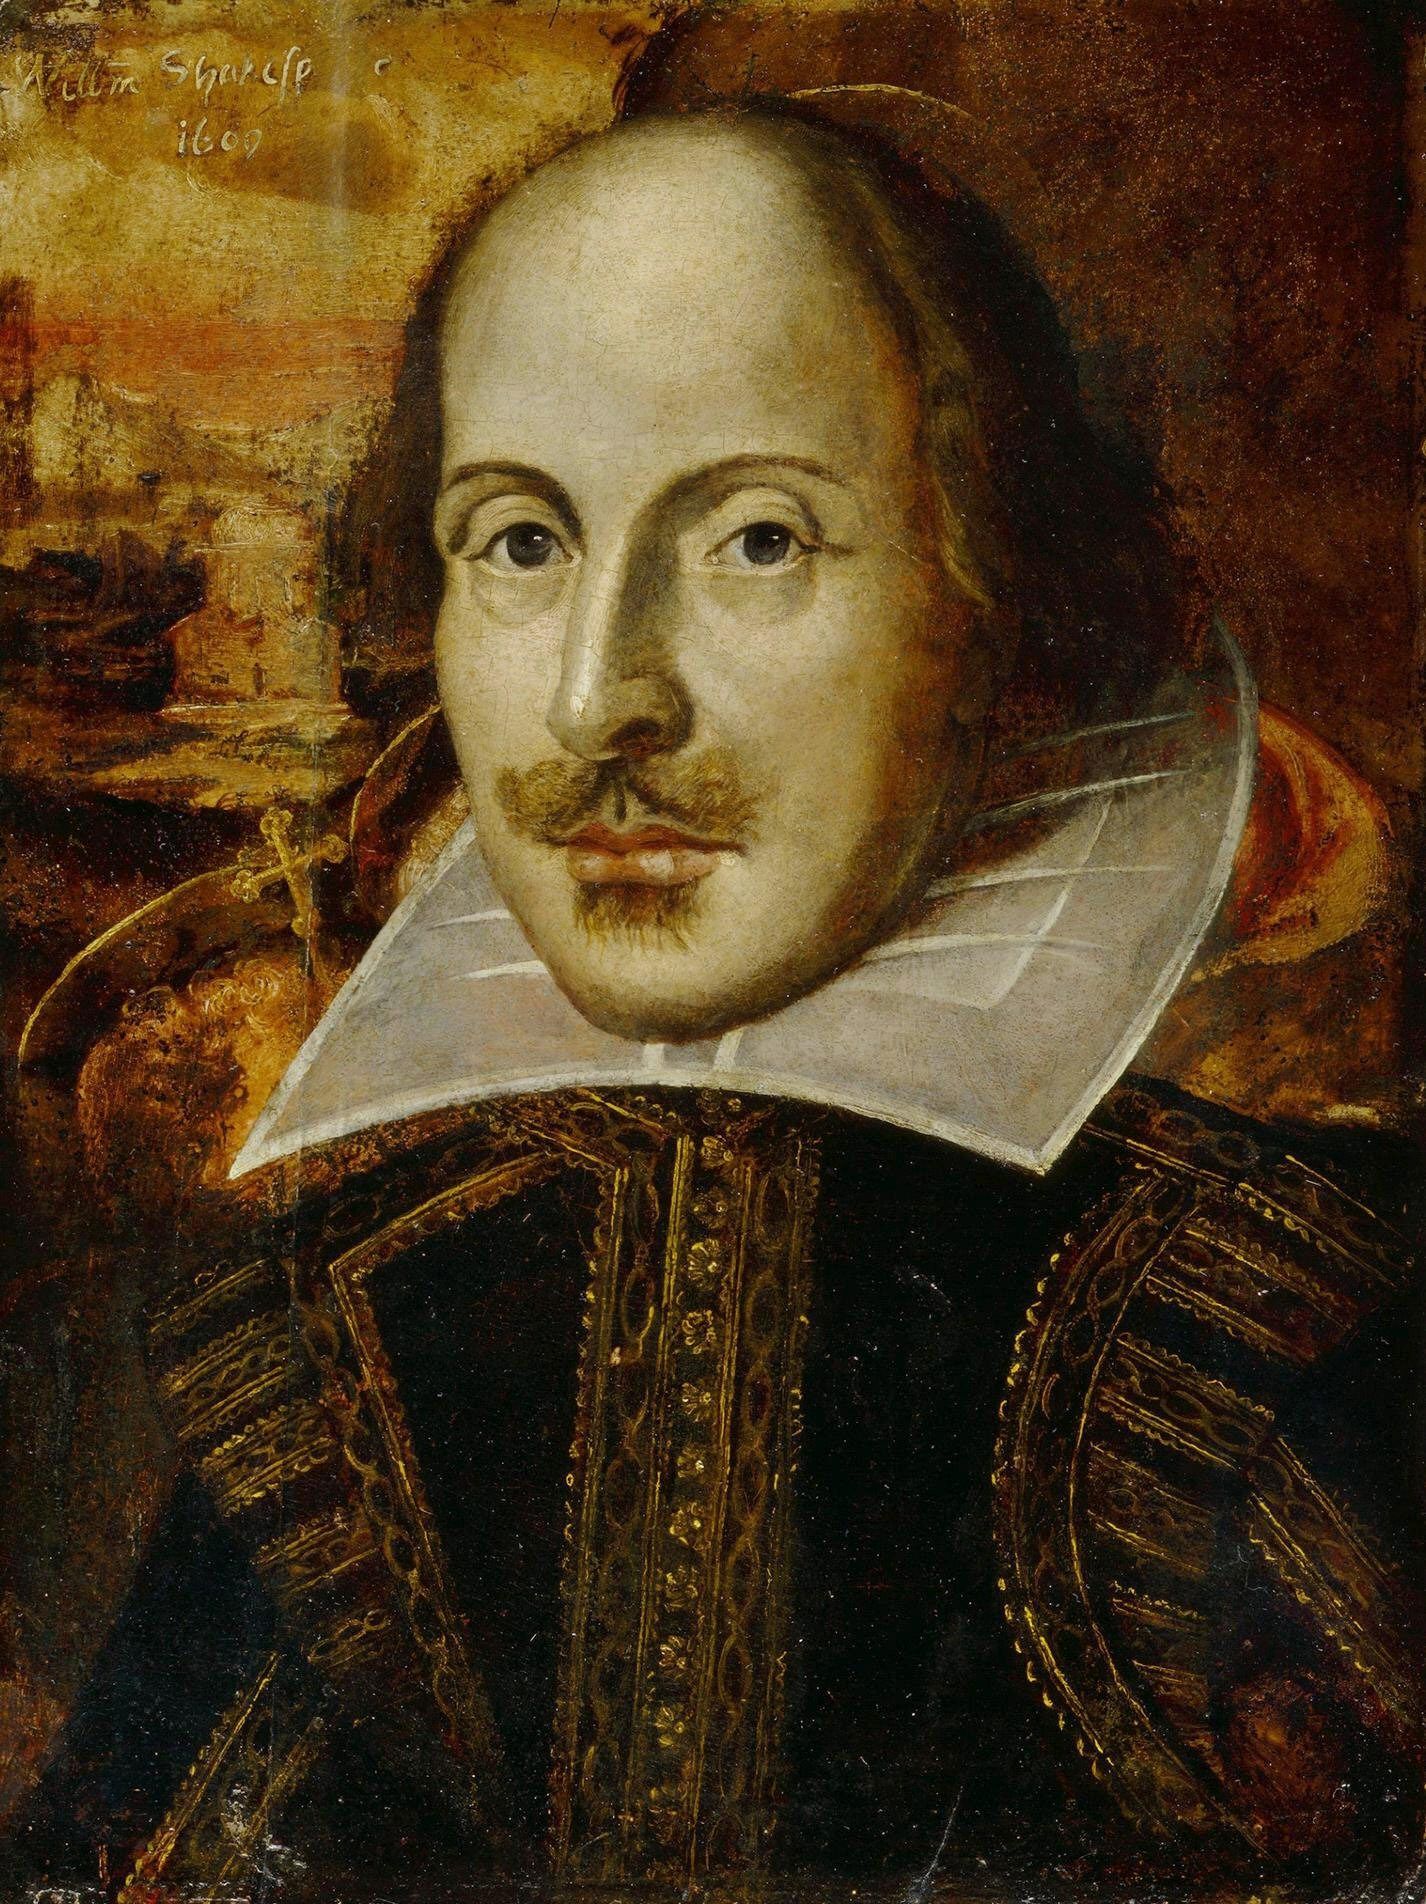 http://upload.wikimedia.org/wikipedia/commons/3/31/William_Shakespeare_1609.jpg